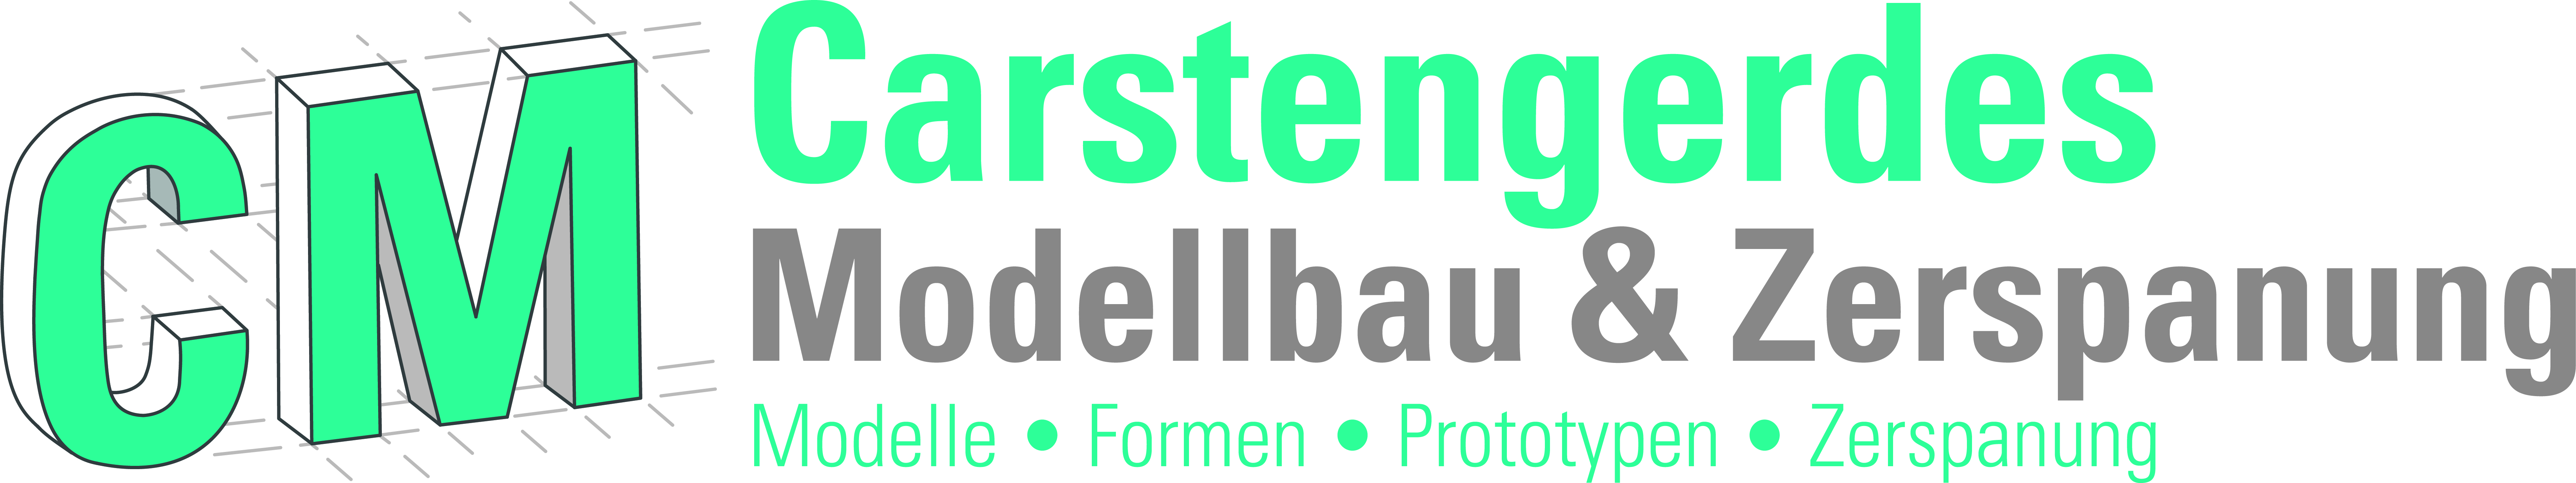 Carstengerdes Modellbau & Zerspanung GmbH